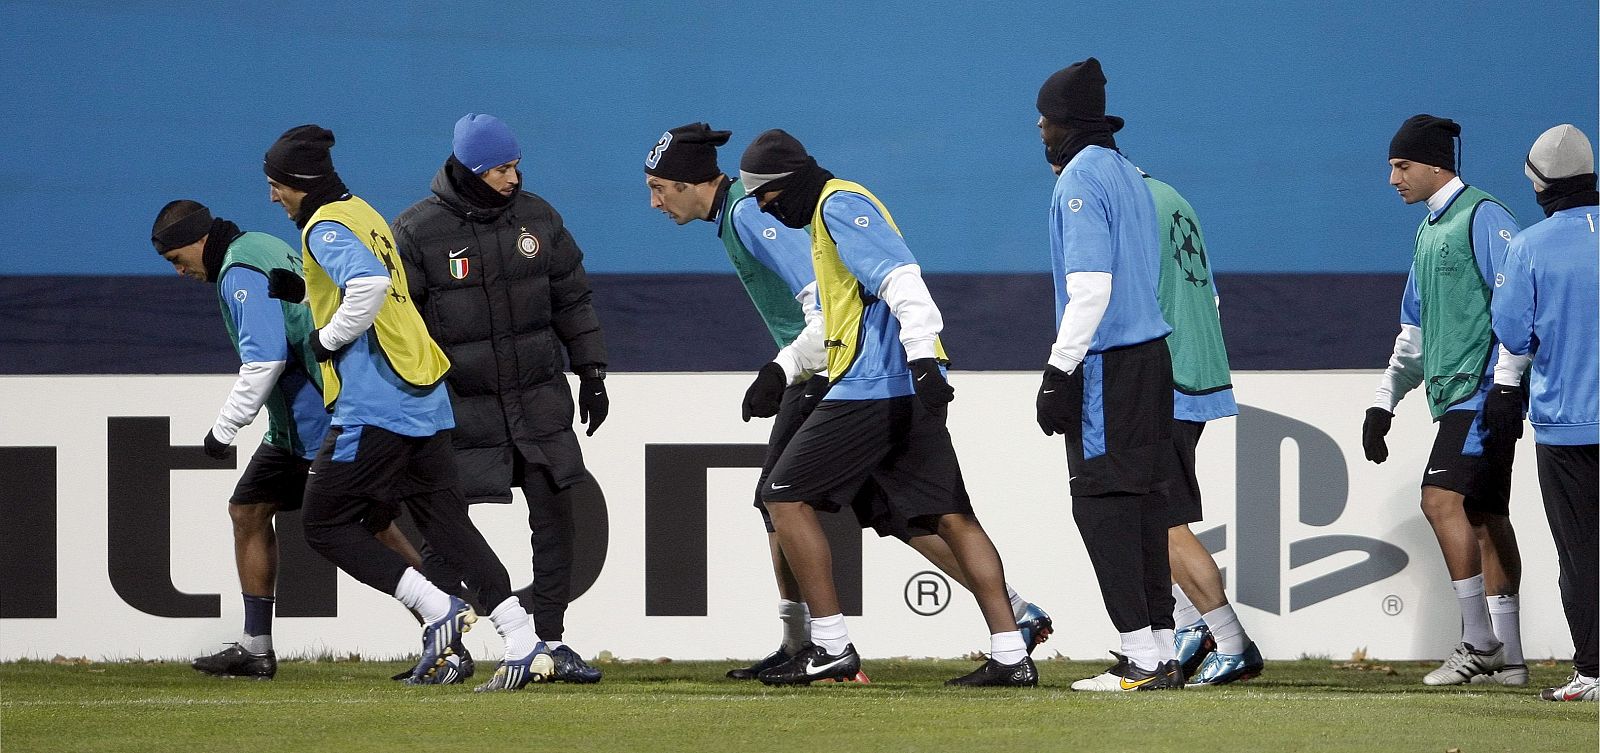 Las bajas temperaturas condicionan el entrenamiento del Inter en Kiev.